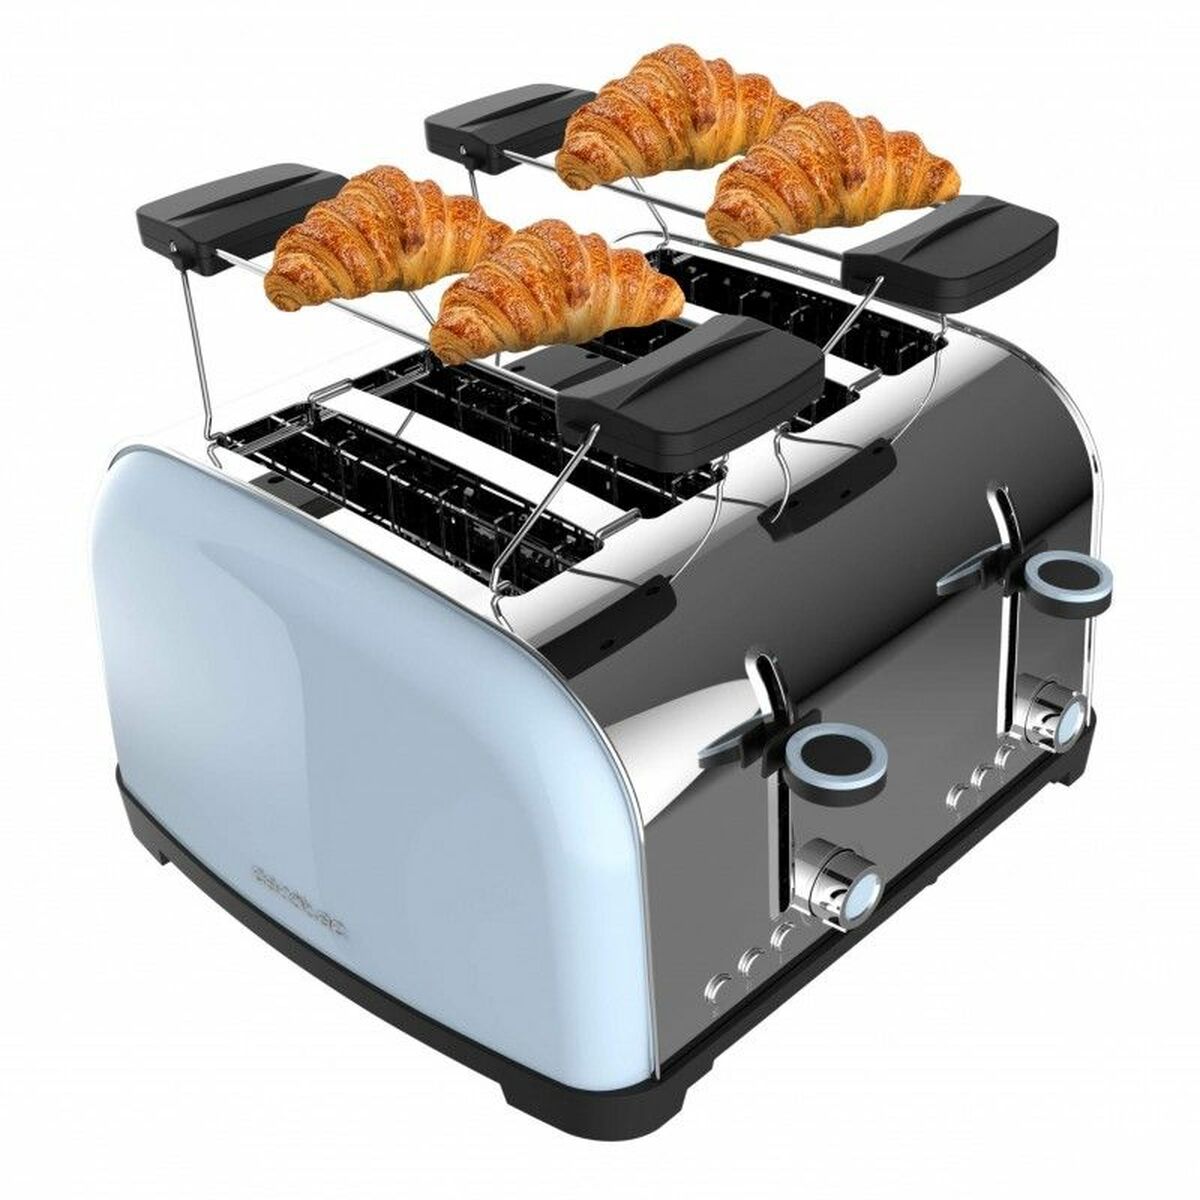 Toaster Cecotec Toastin' time 1700 Double 1700 W - CA International  